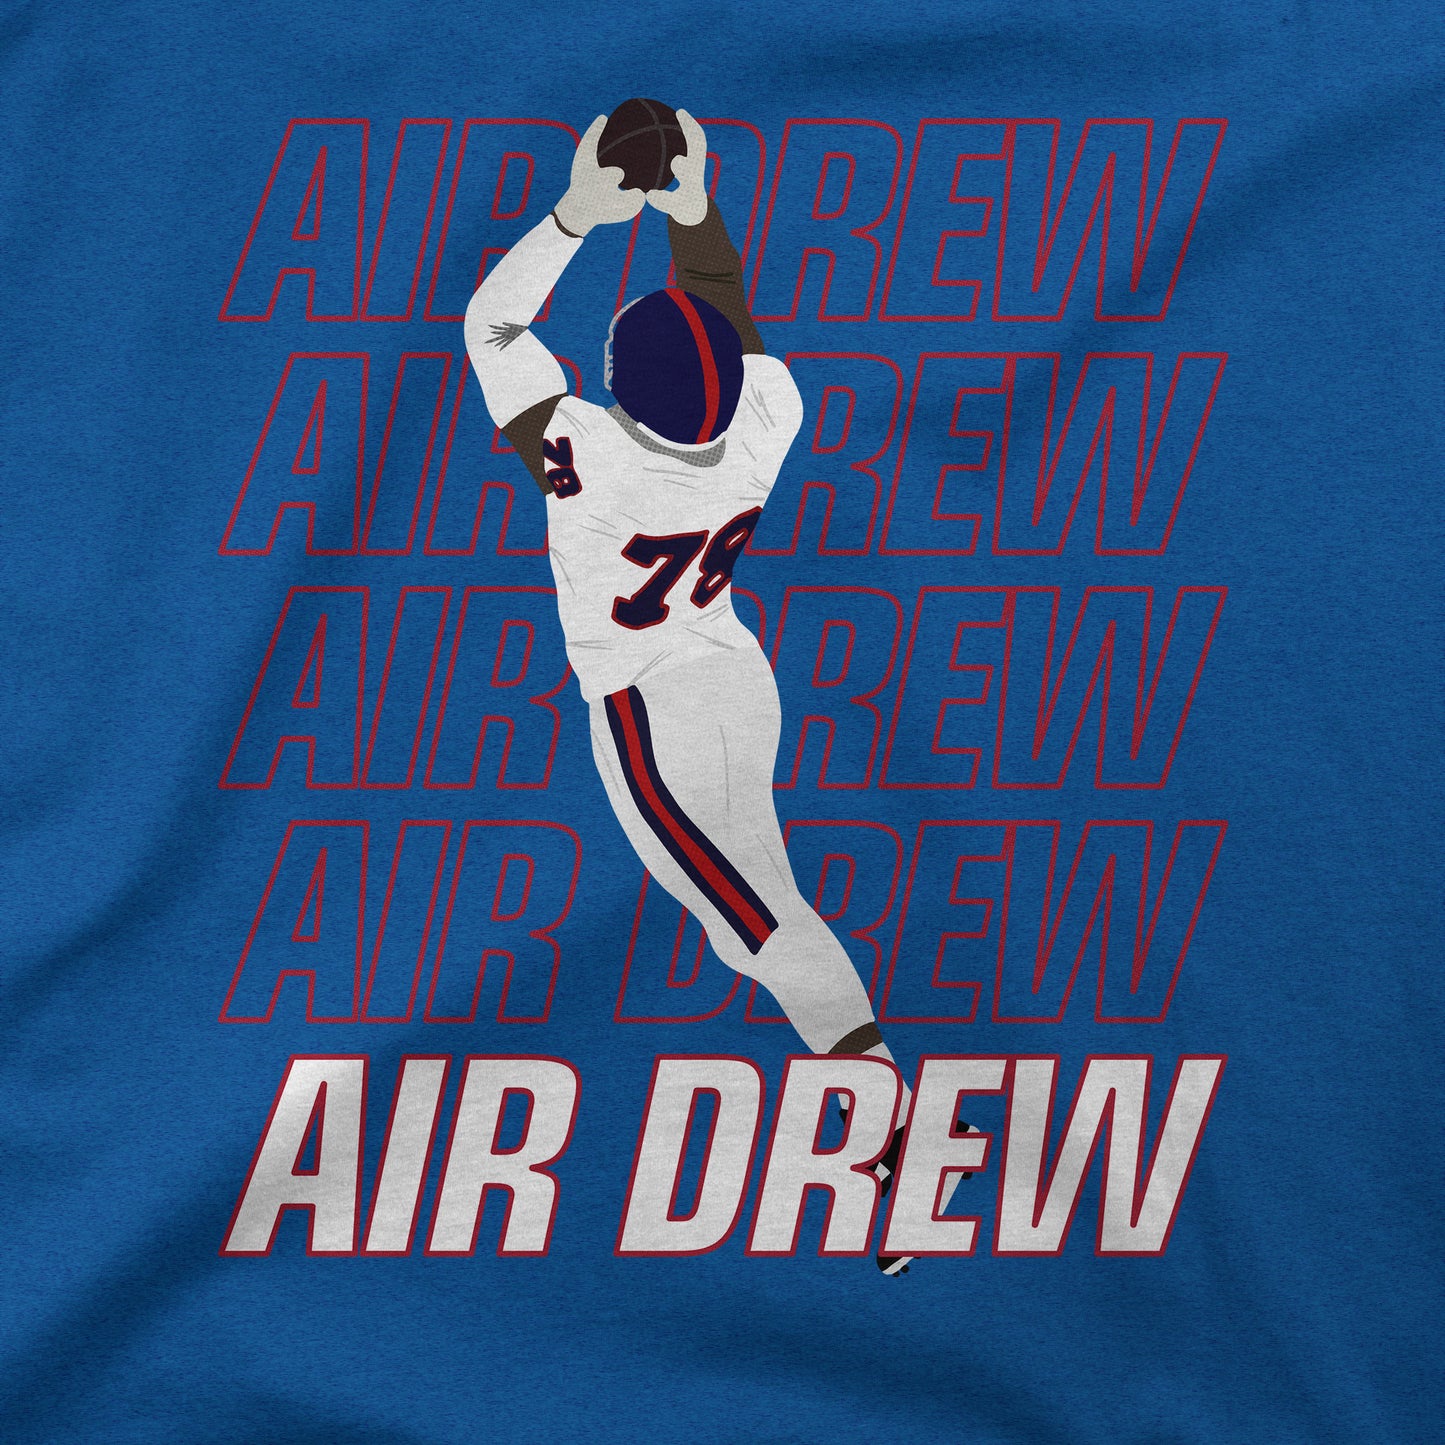 Air Drew | T-Shirt